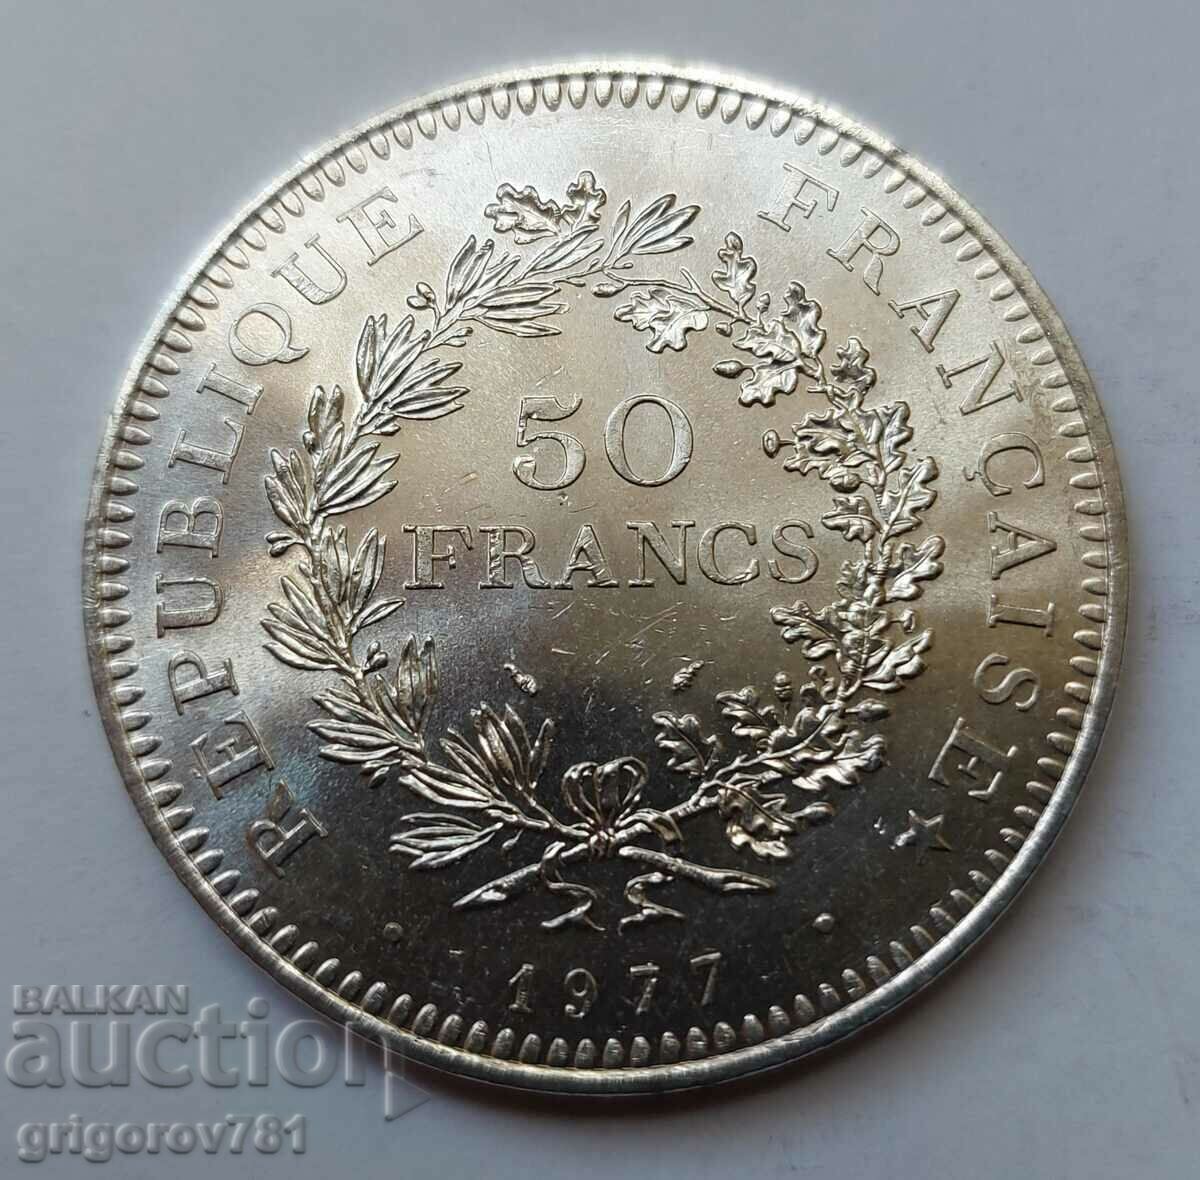 Ασήμι 50 φράγκων Γαλλία 1977 - Ασημένιο νόμισμα #40